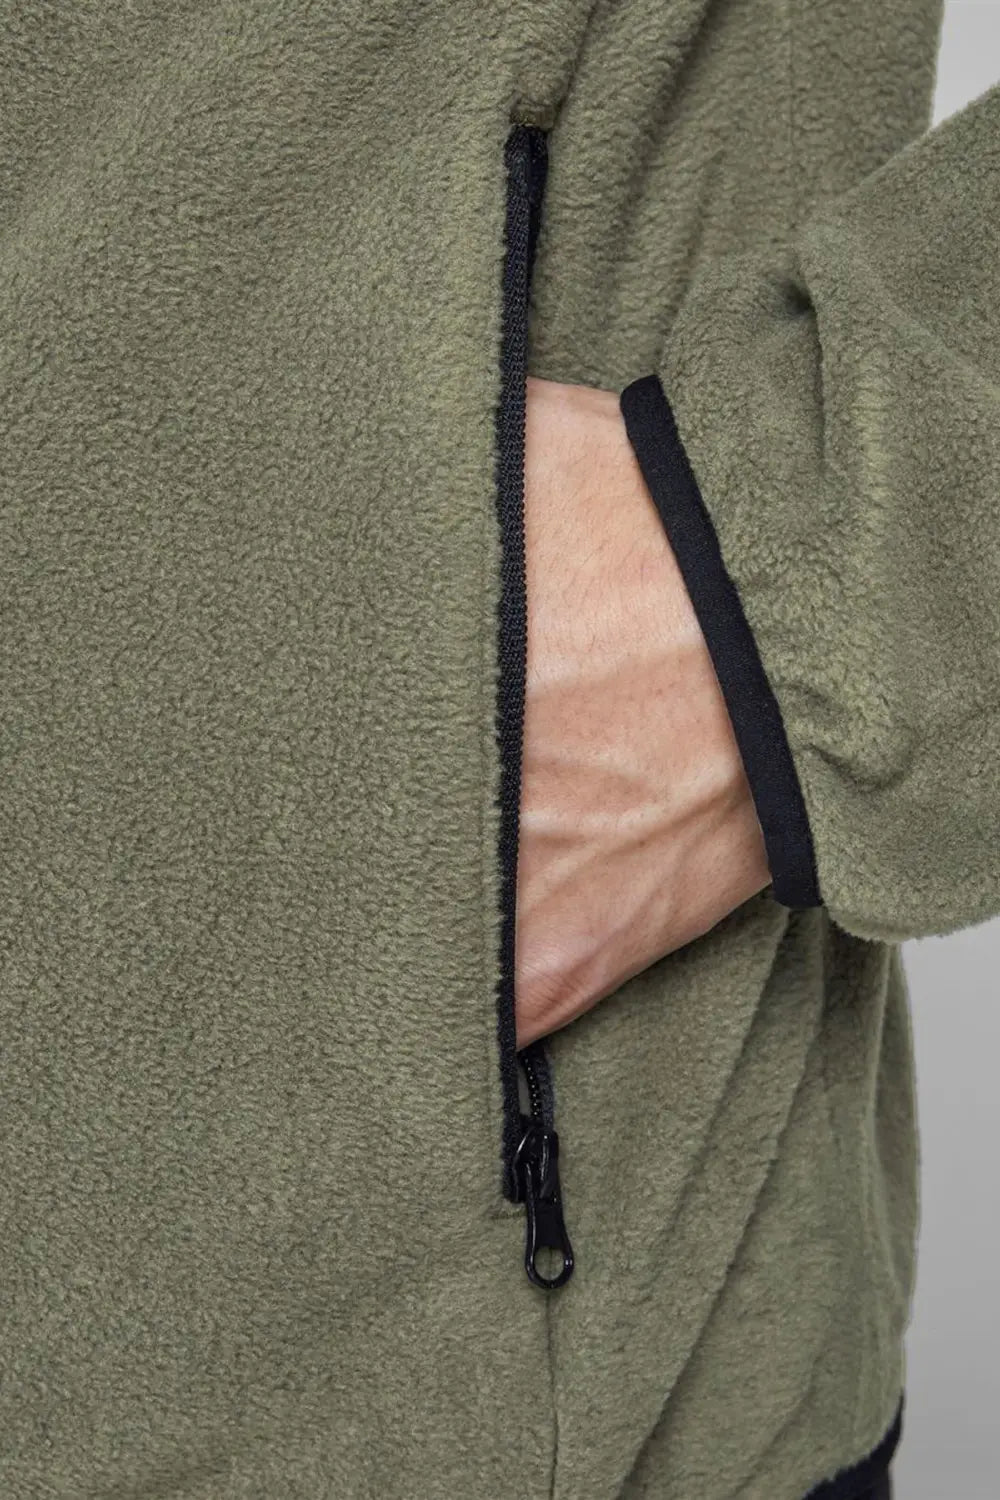 Jack & Jones Contrast Fleece Zip Front Jacket